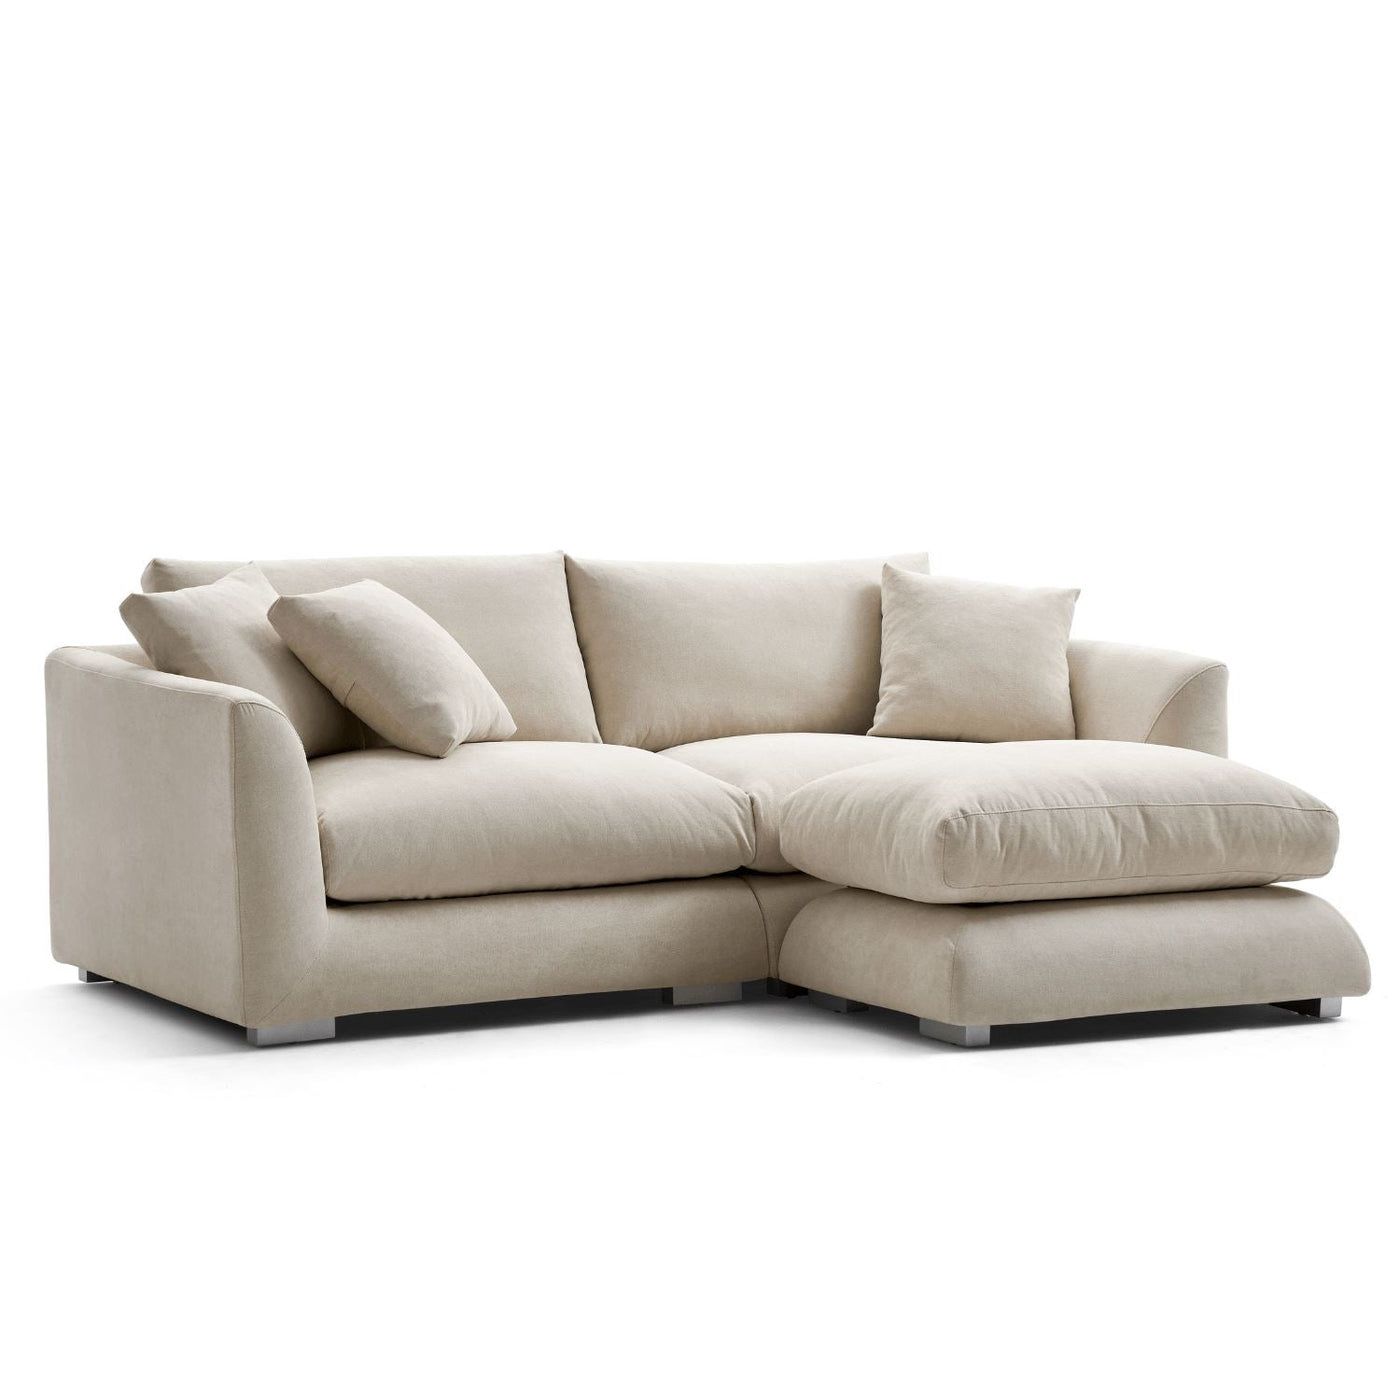 comfortable sofa